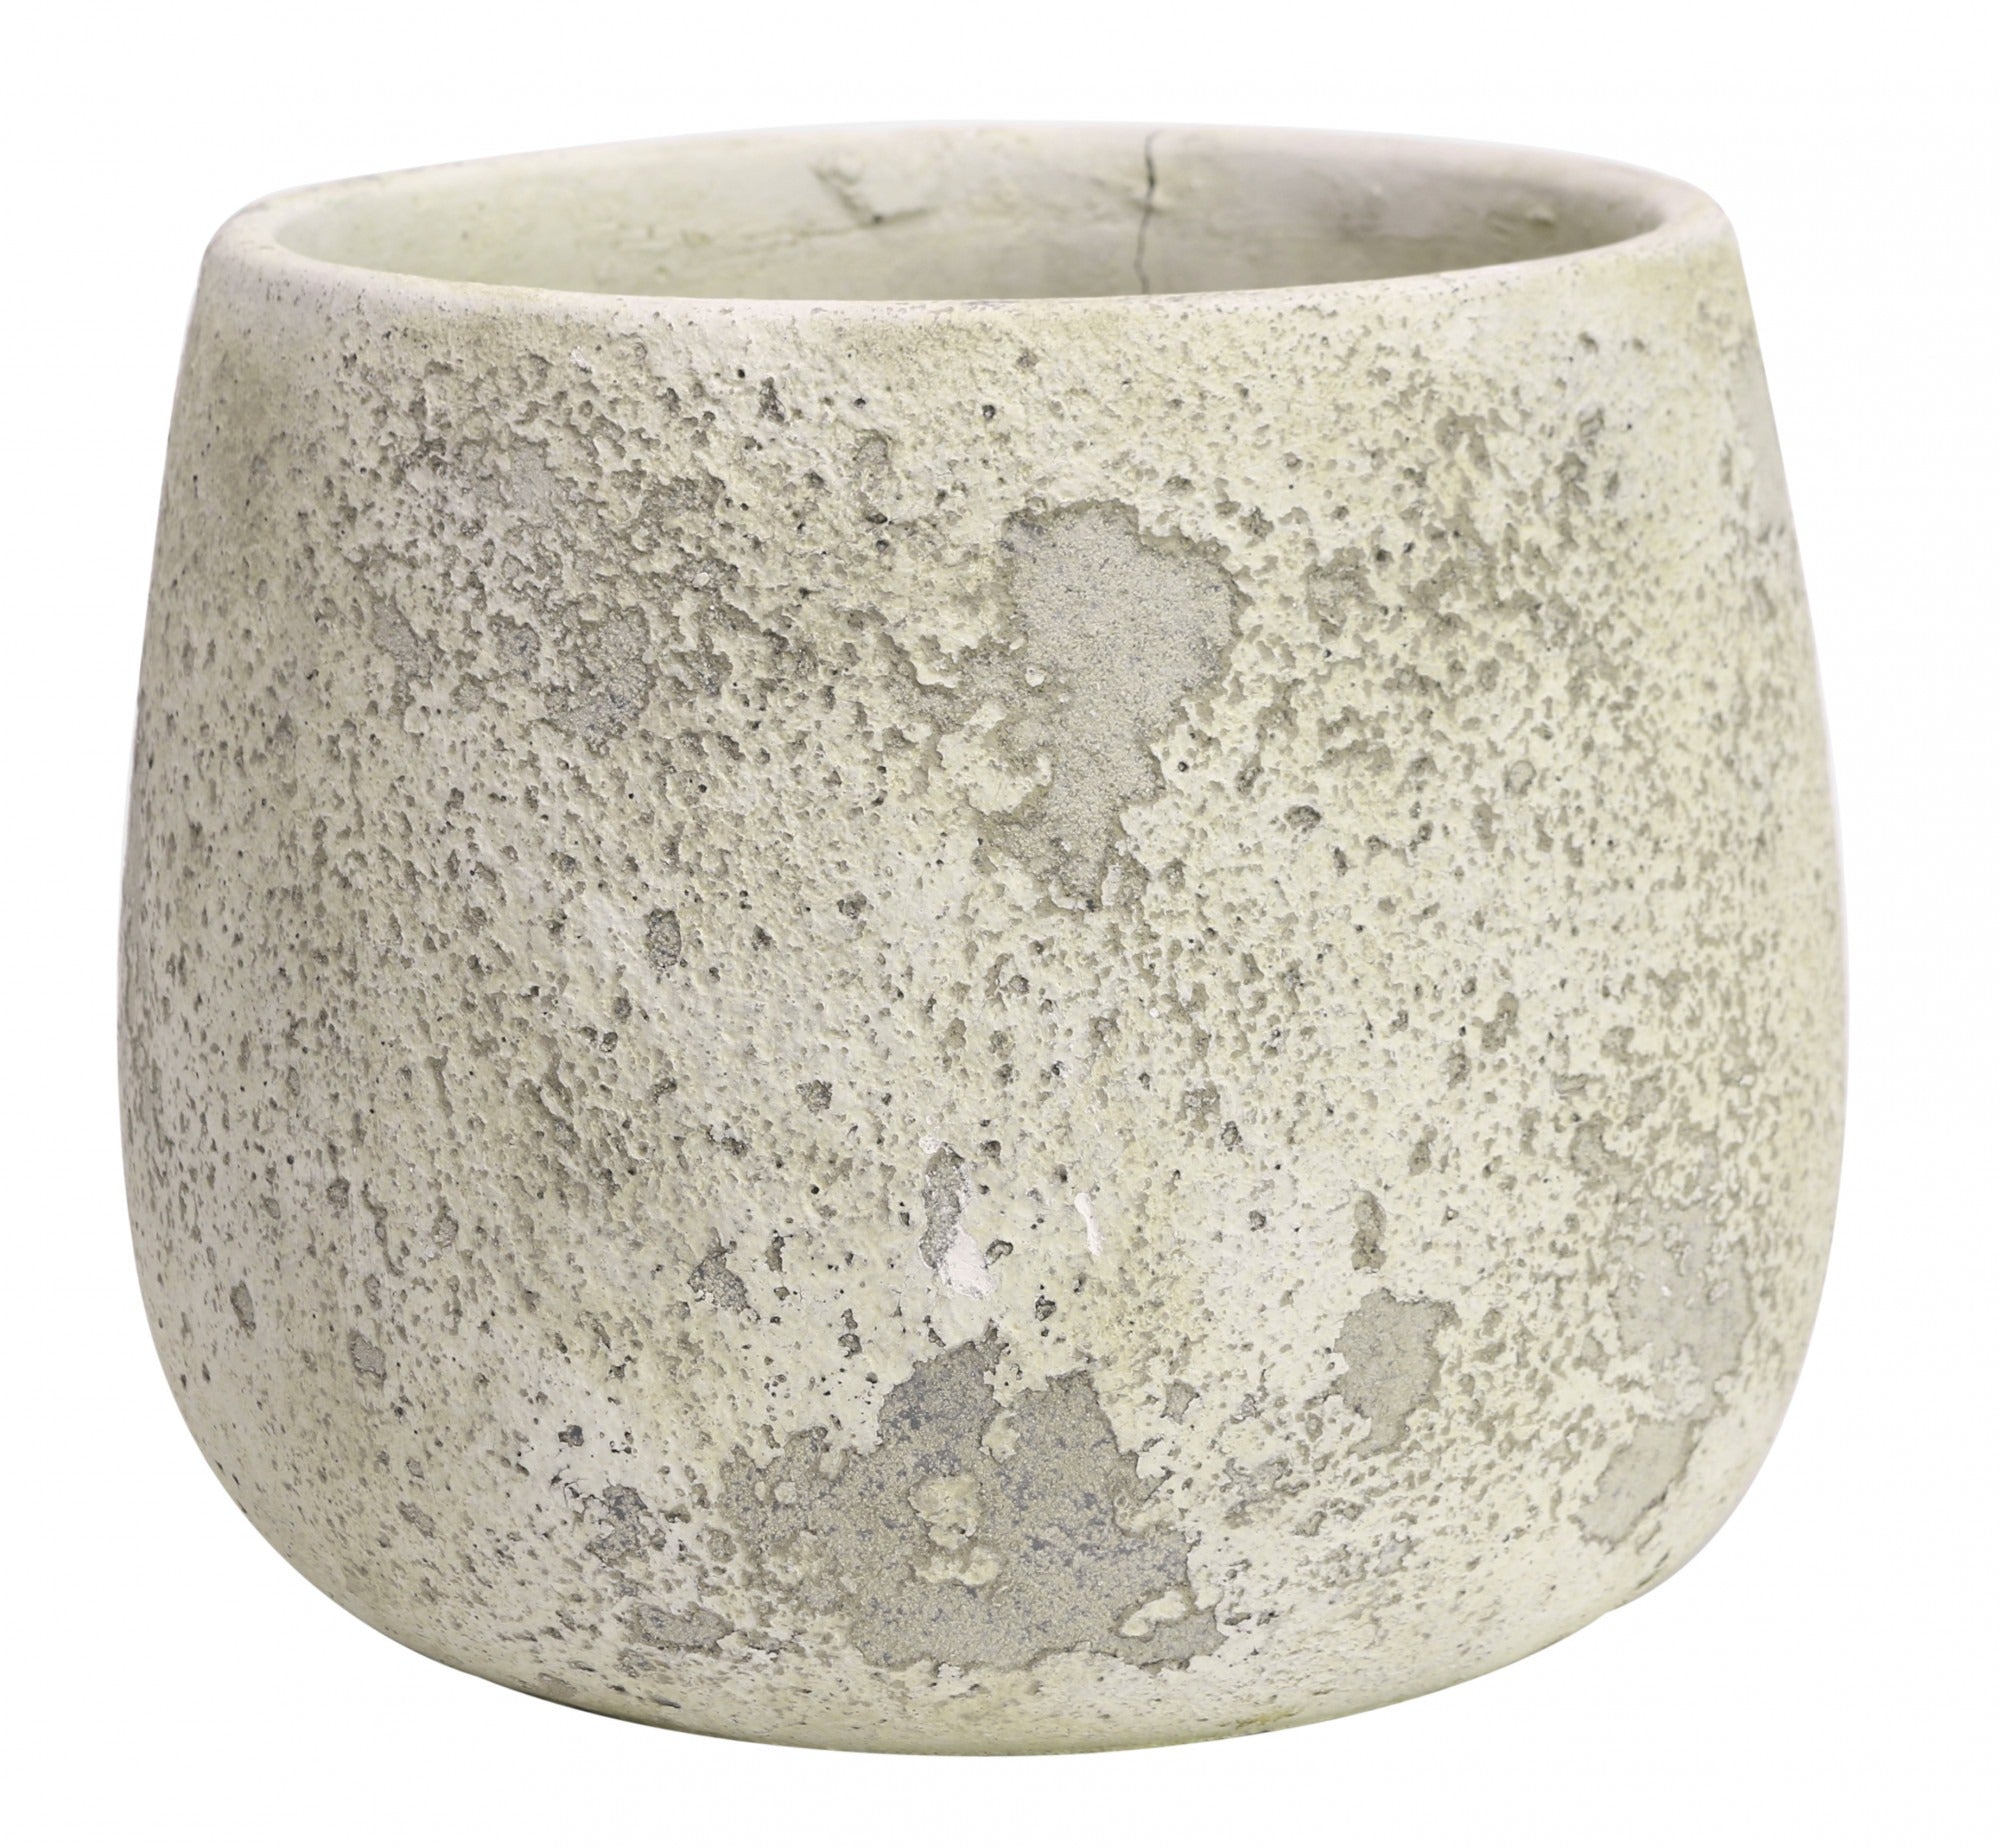 View Rustic Bowl Cement Flower Pot 17cm information